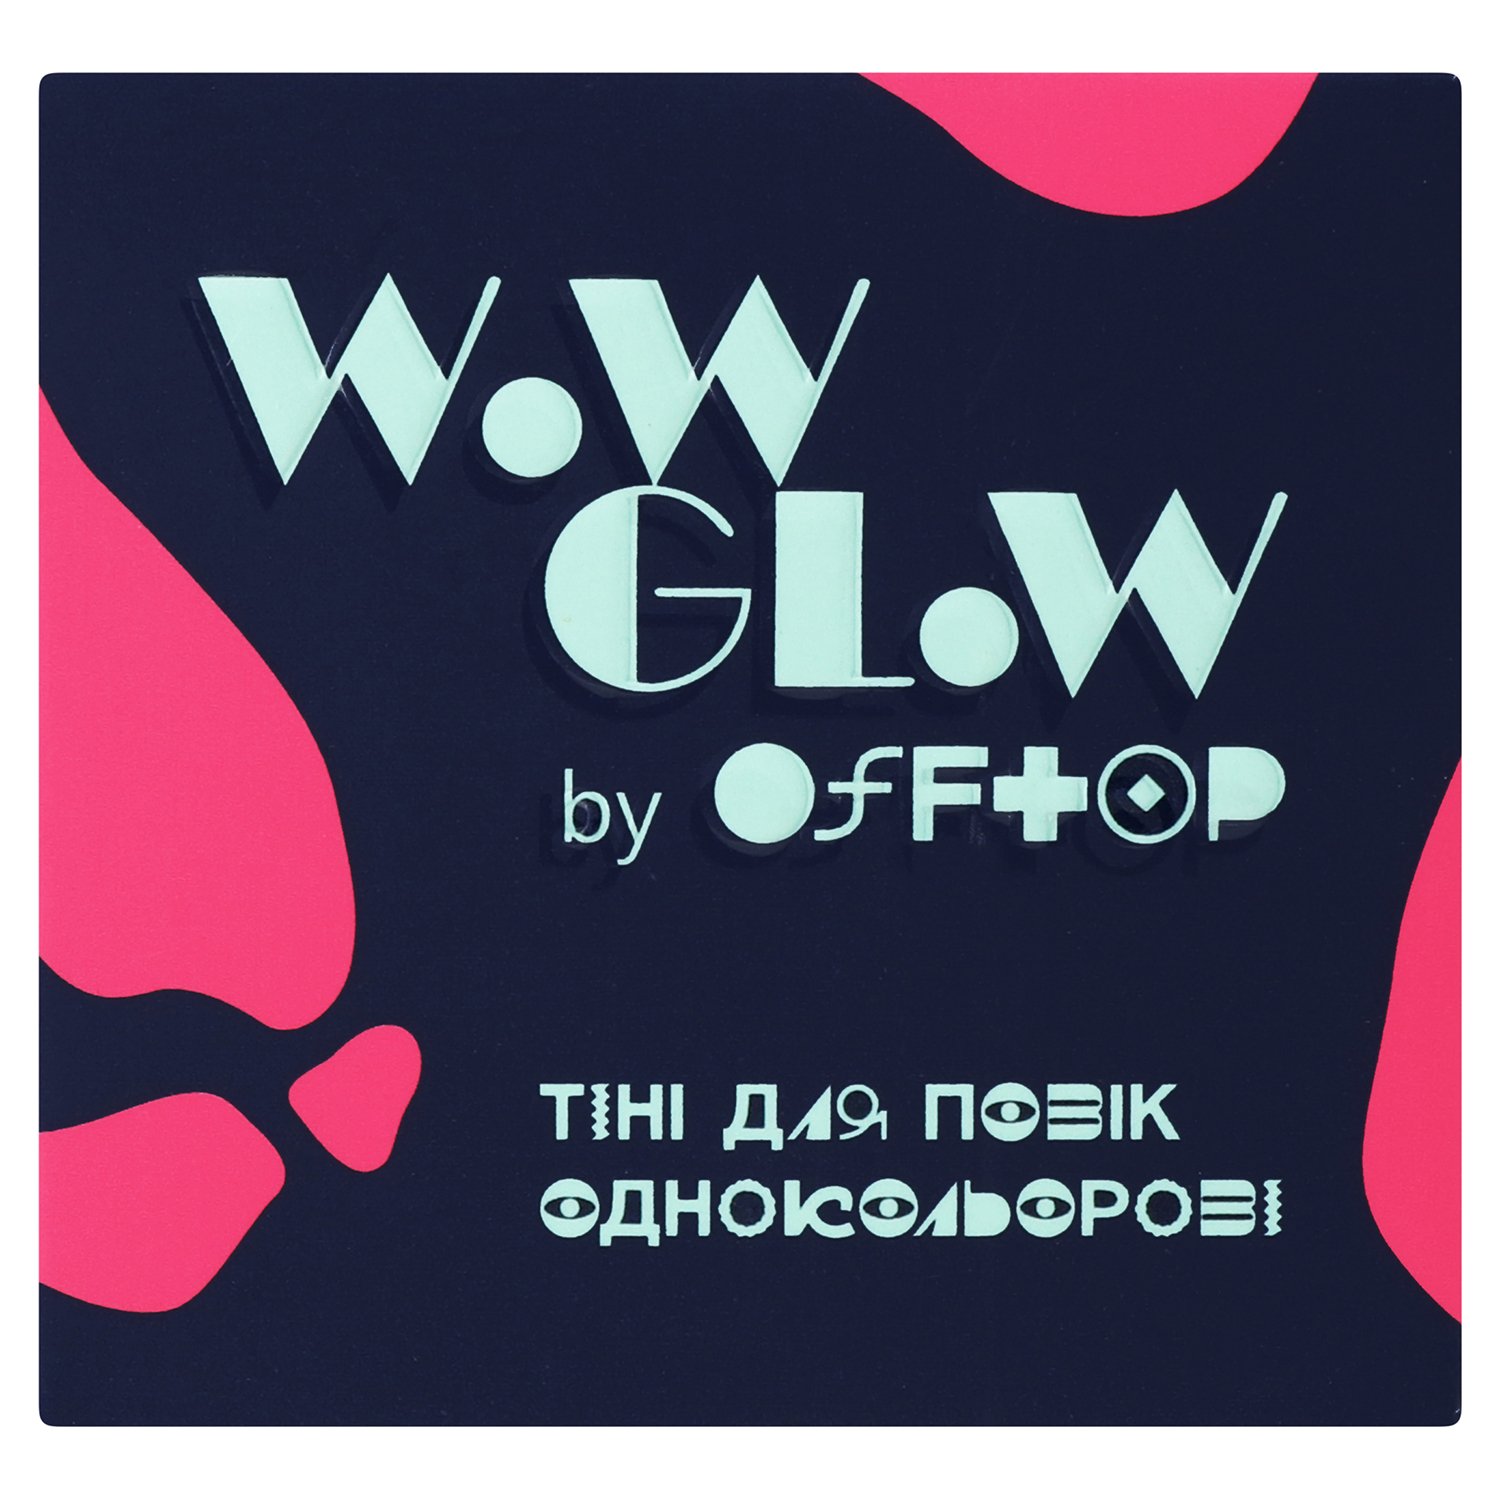 Тіні для повік Offtop Wow Glow, тон 01 (889588) - фото 2